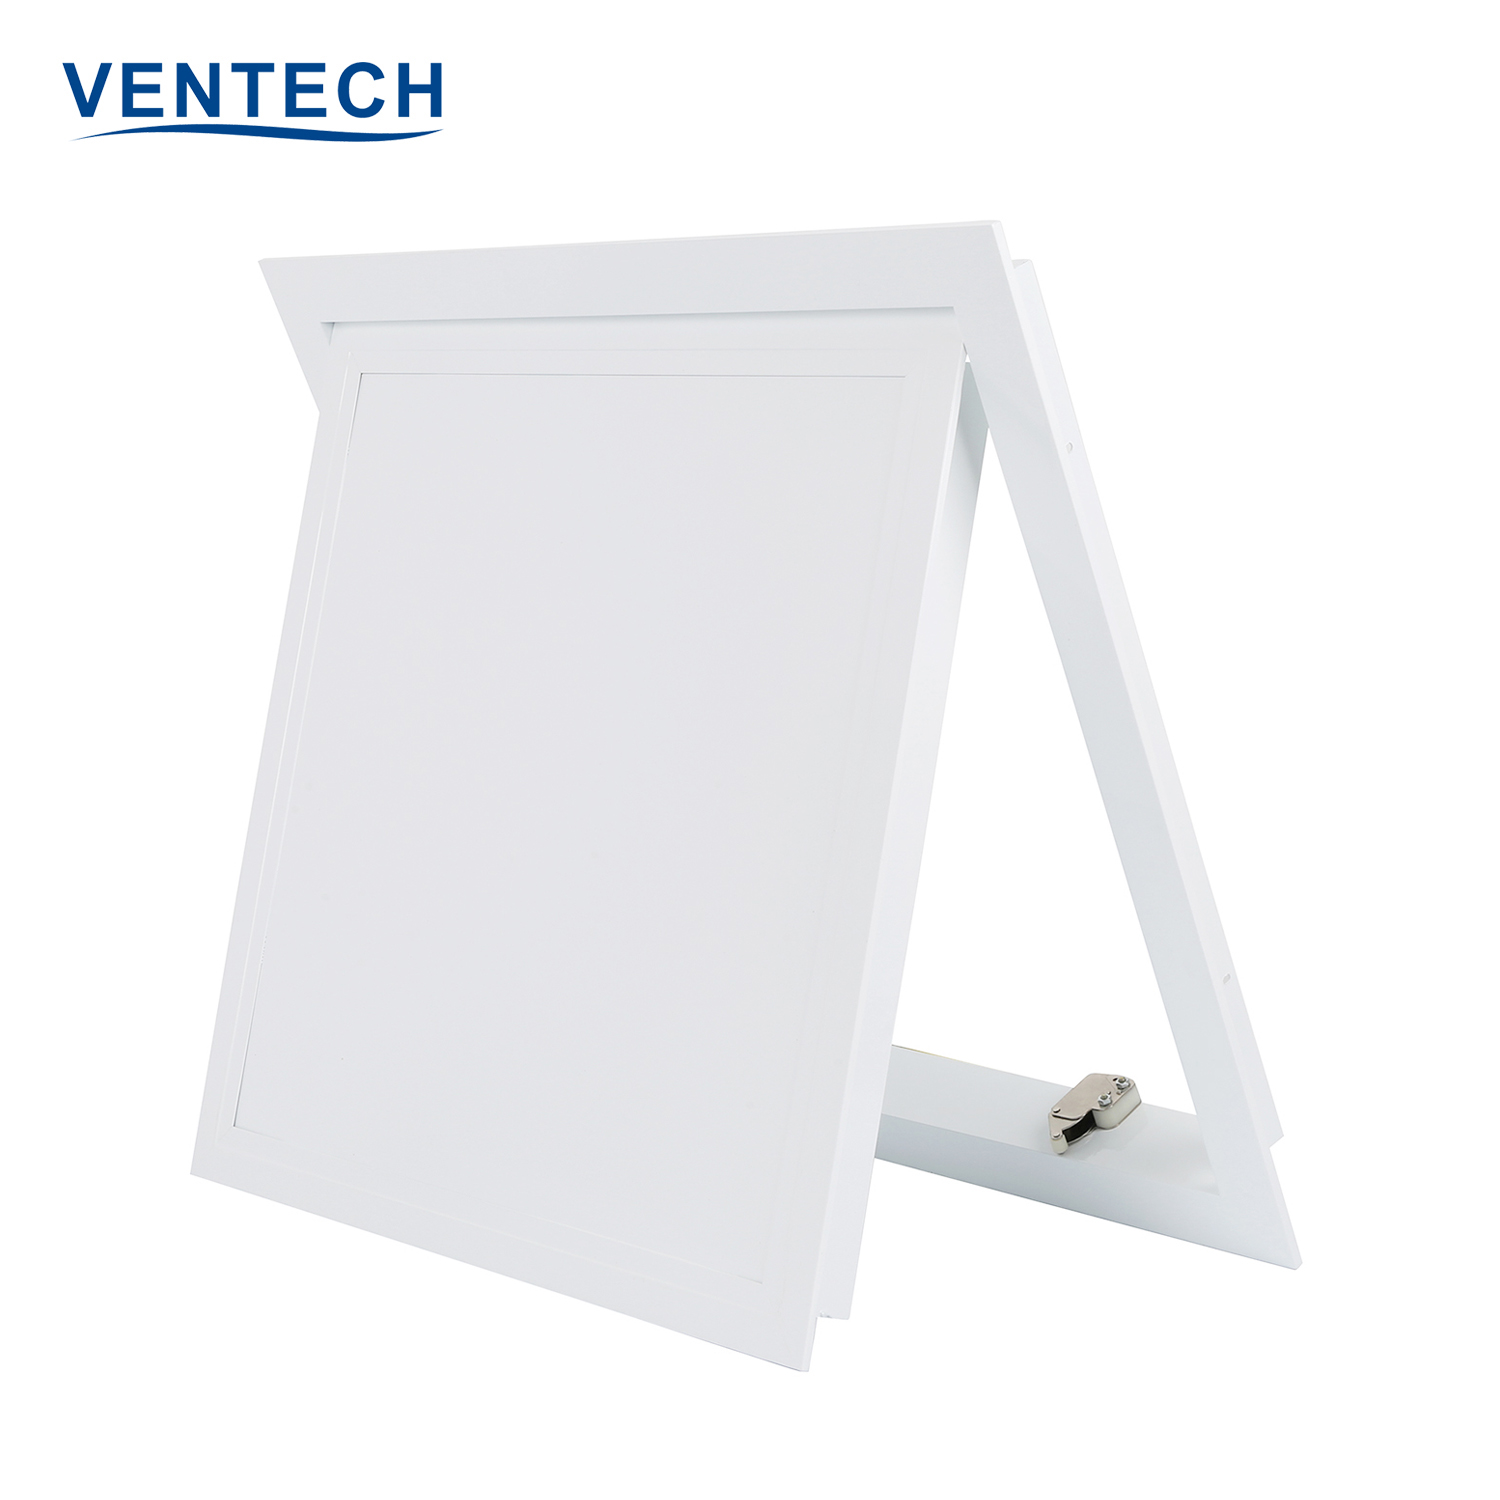 Ventech best access doors factory direct supply for long corridors-2